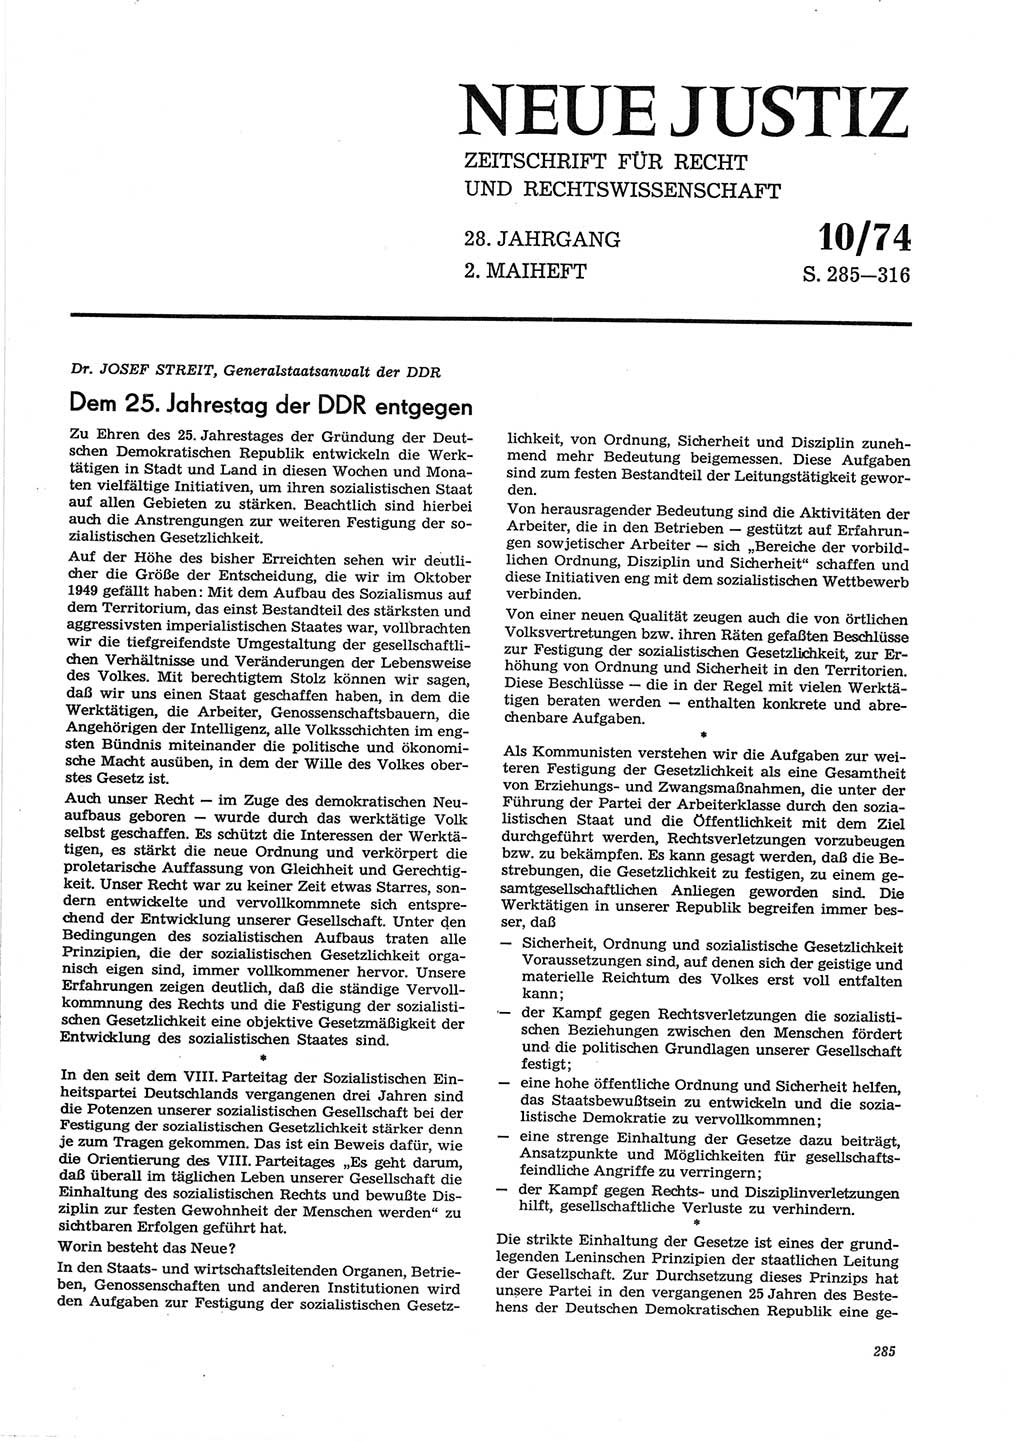 Neue Justiz (NJ), Zeitschrift für Recht und Rechtswissenschaft [Deutsche Demokratische Republik (DDR)], 28. Jahrgang 1974, Seite 285 (NJ DDR 1974, S. 285)